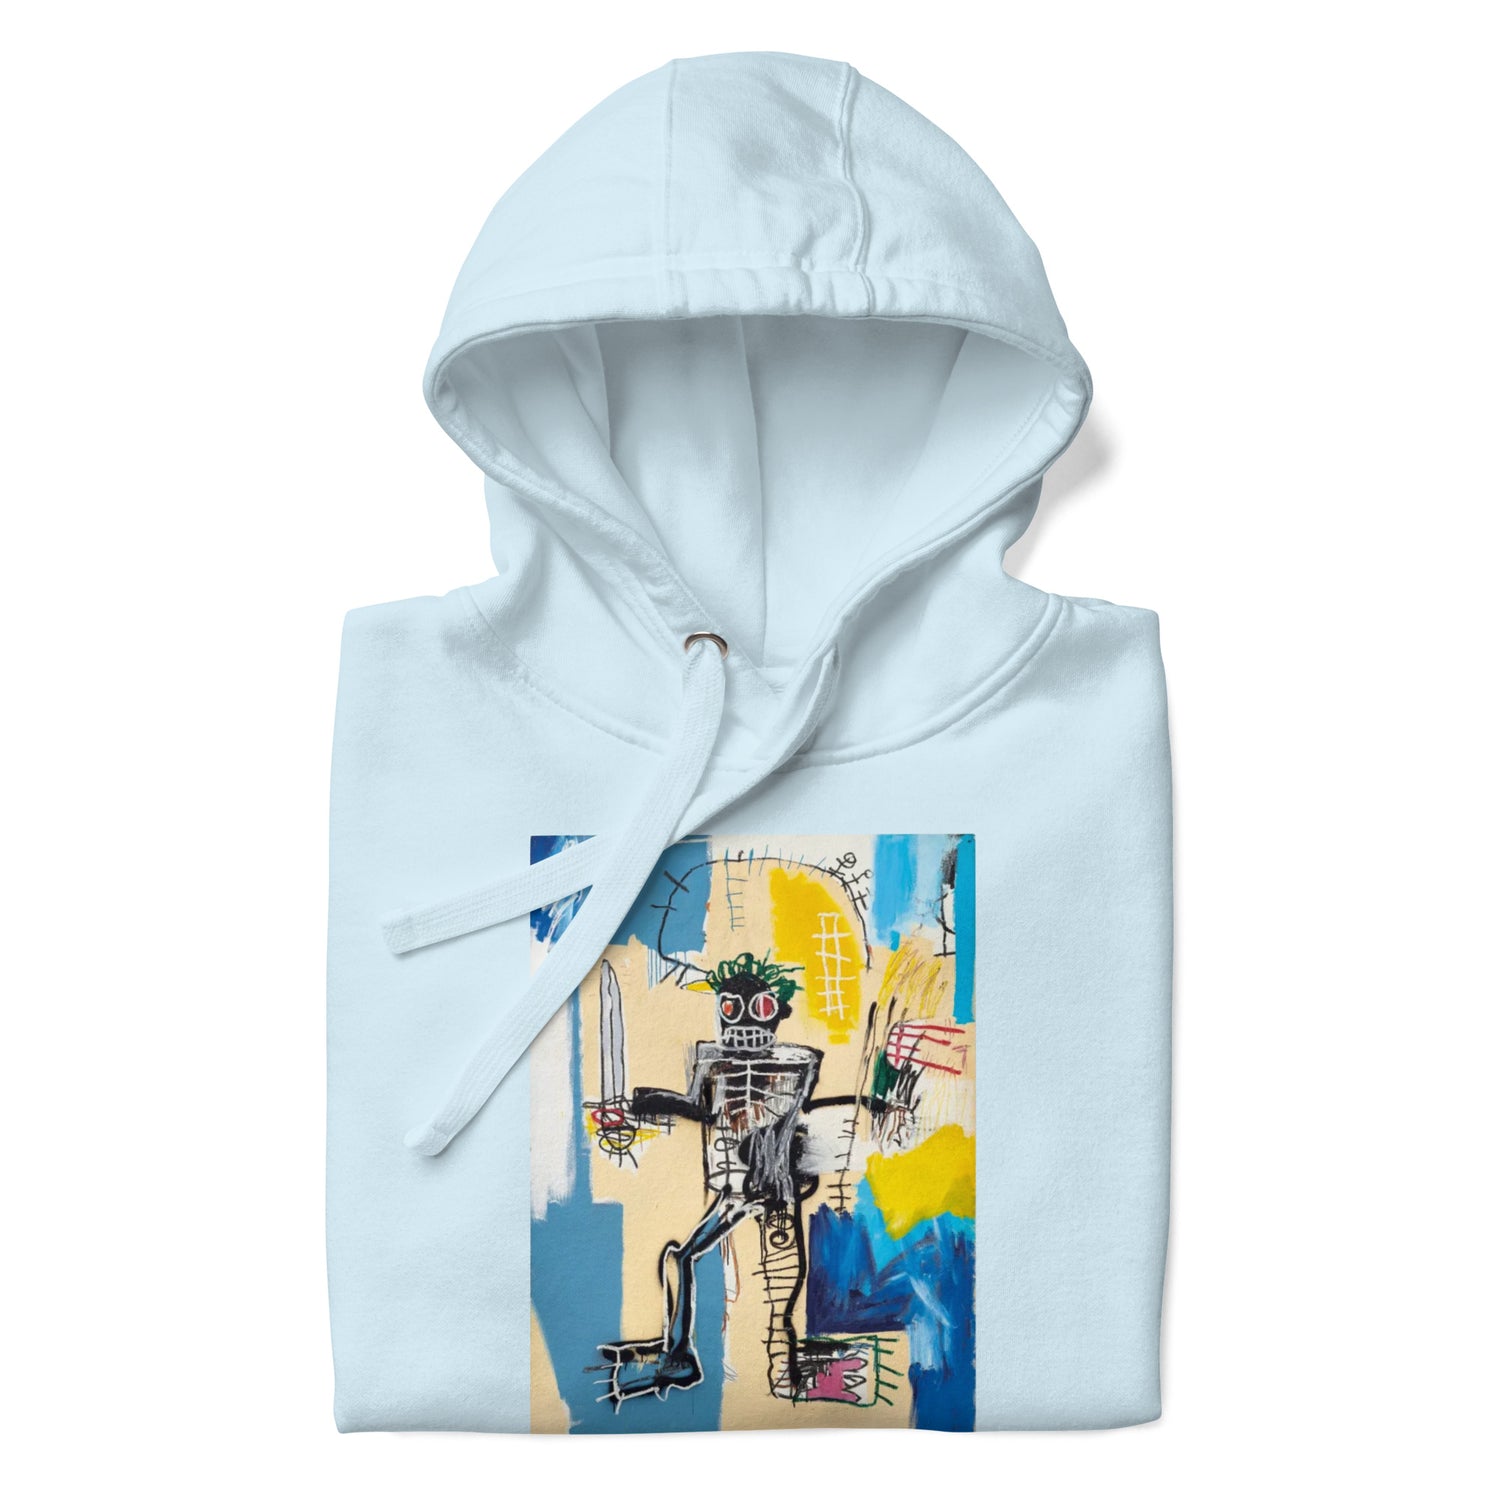 Jean-Michel Basquiat "Warrior" Artwork Printed Premium Streetwear Sweatshirt Hoodie Ice Blue